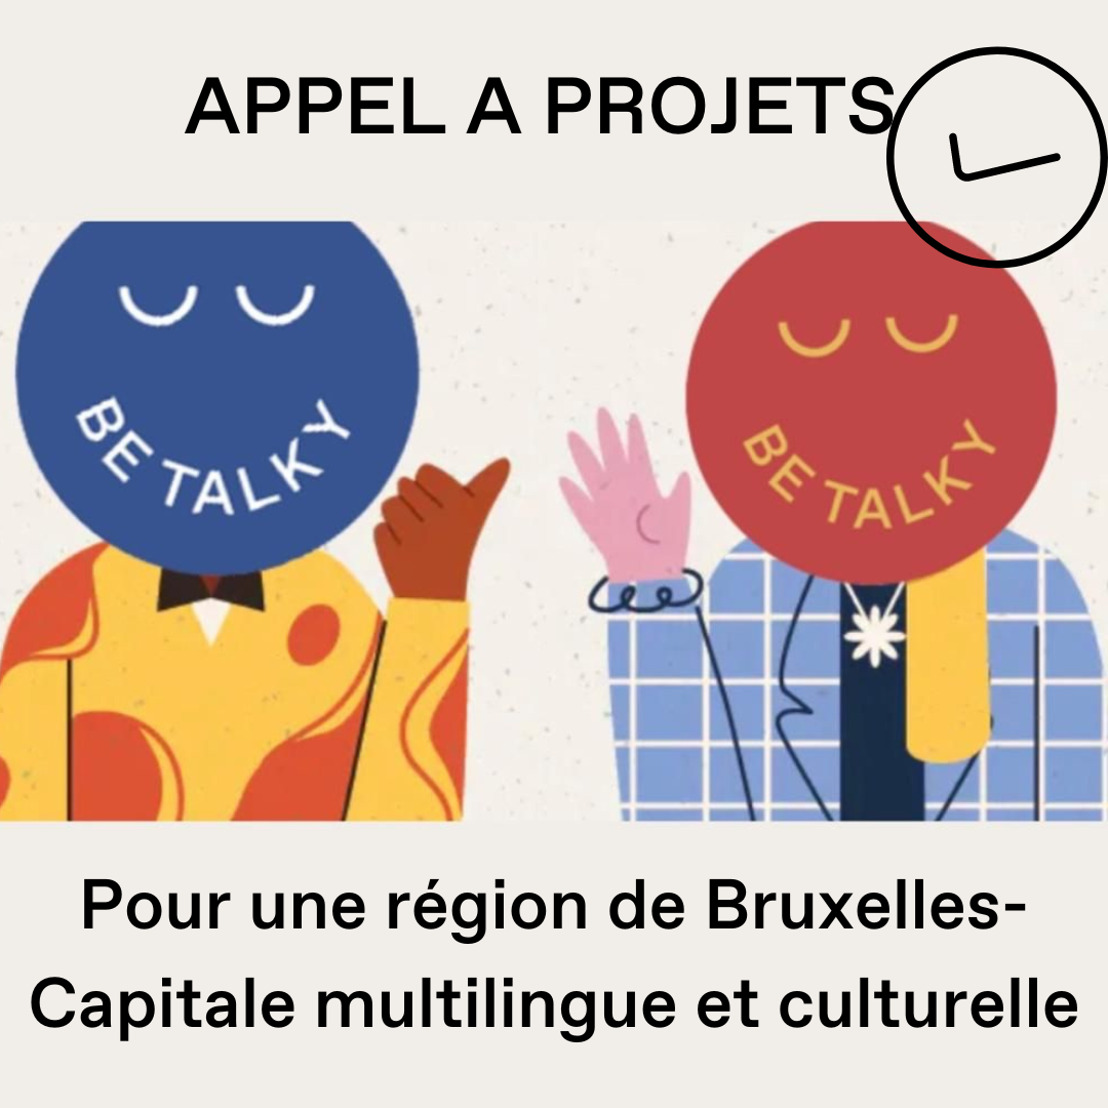 Douze projets culturels reçoivent un soutien via BeTalky.brussels 